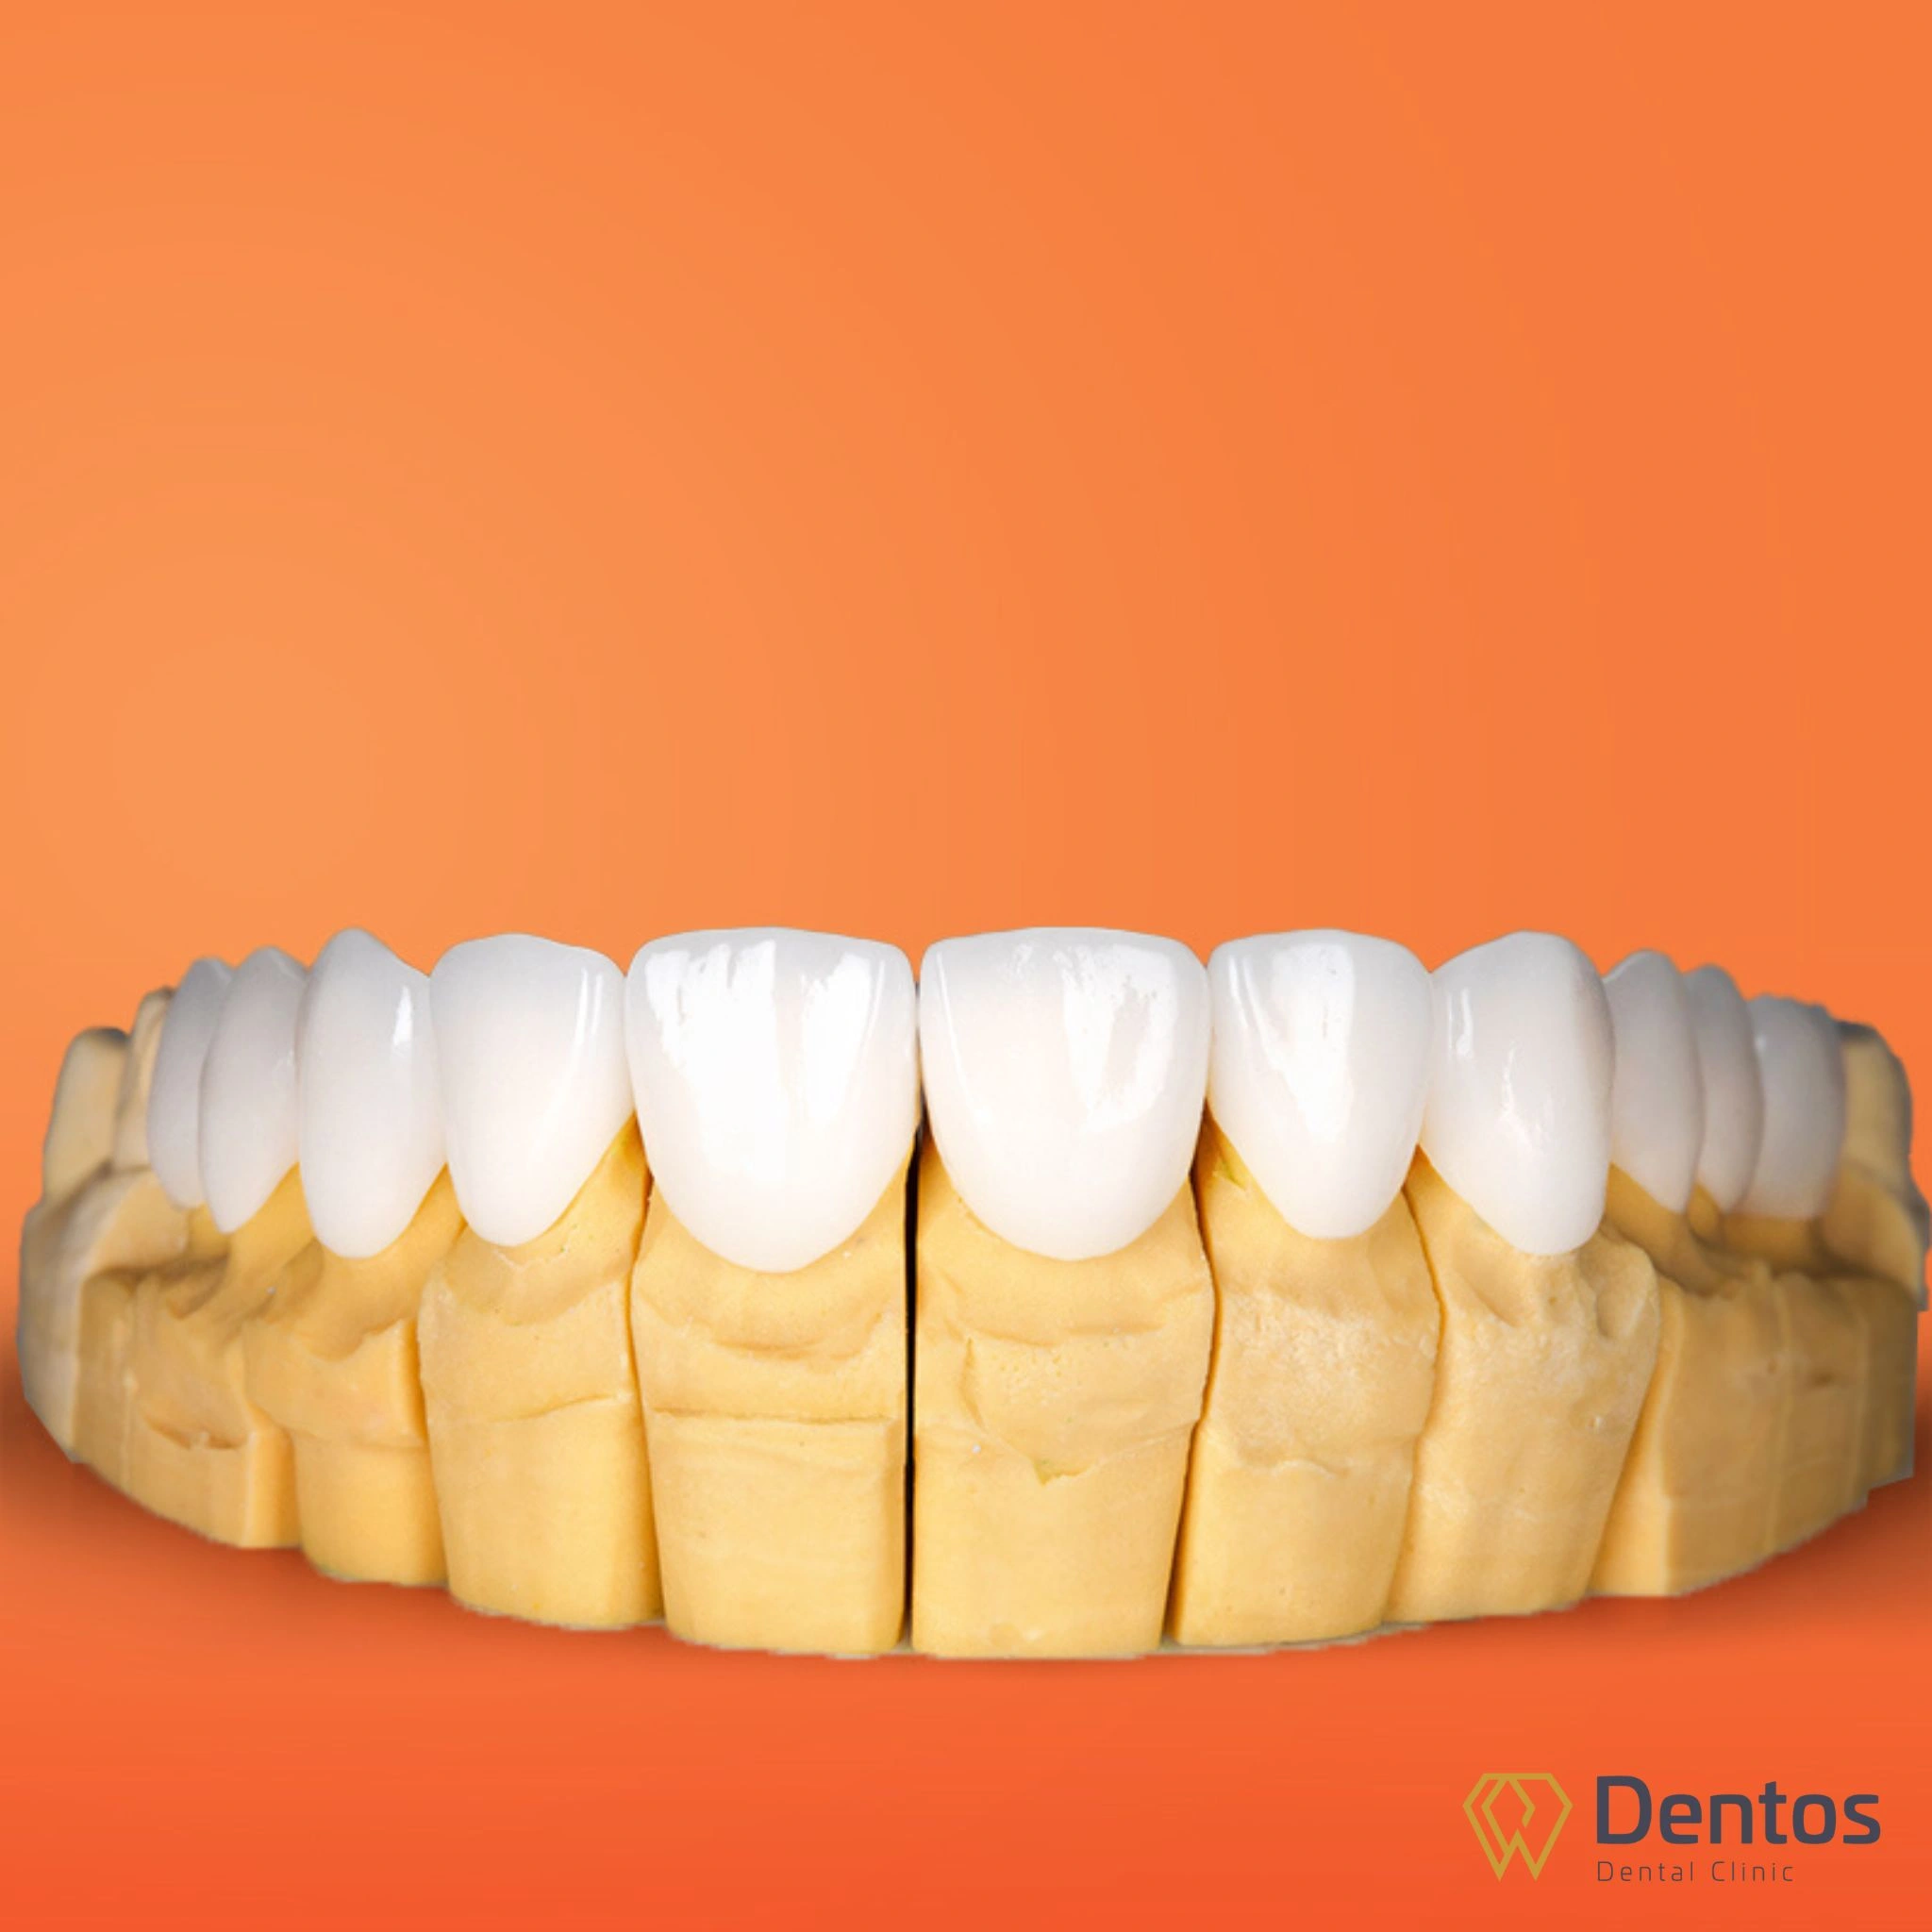 Răng sứ Zirconia là dòng răng toàn sứ được đúc nguyên khối từ khối sứ Zirconia